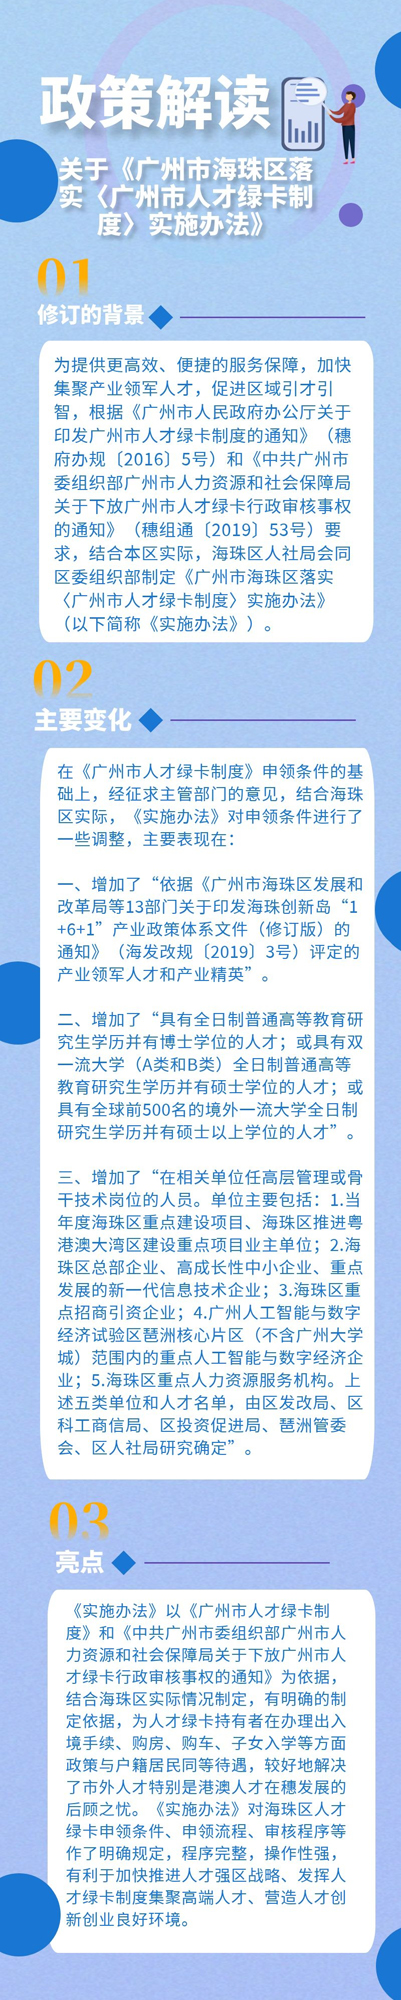 关于《广州市海珠区落实〈广州市人才绿卡制度〉实施办法》的政策解读1.jpg